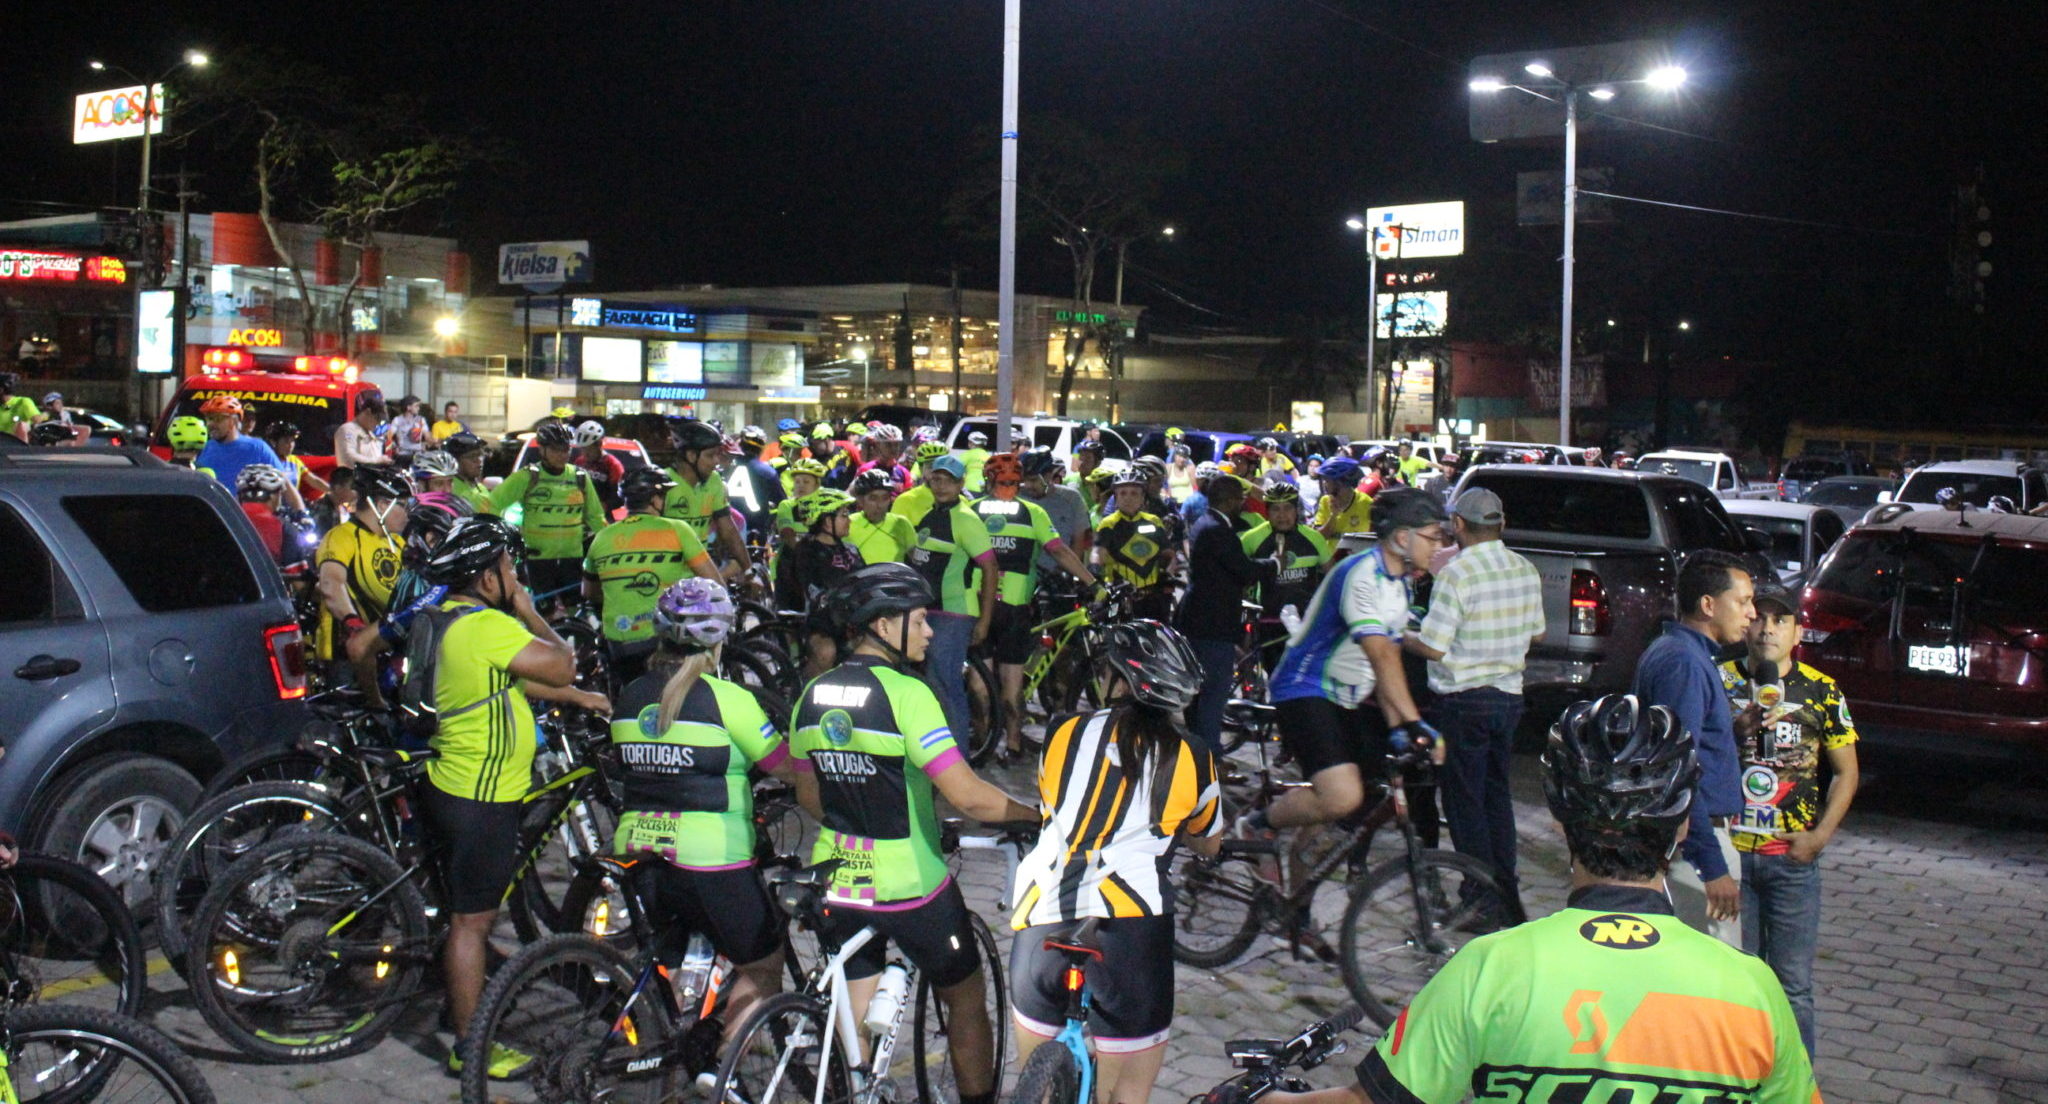 Clubes sampedranos celebraron Día Internacional de la Bicicleta